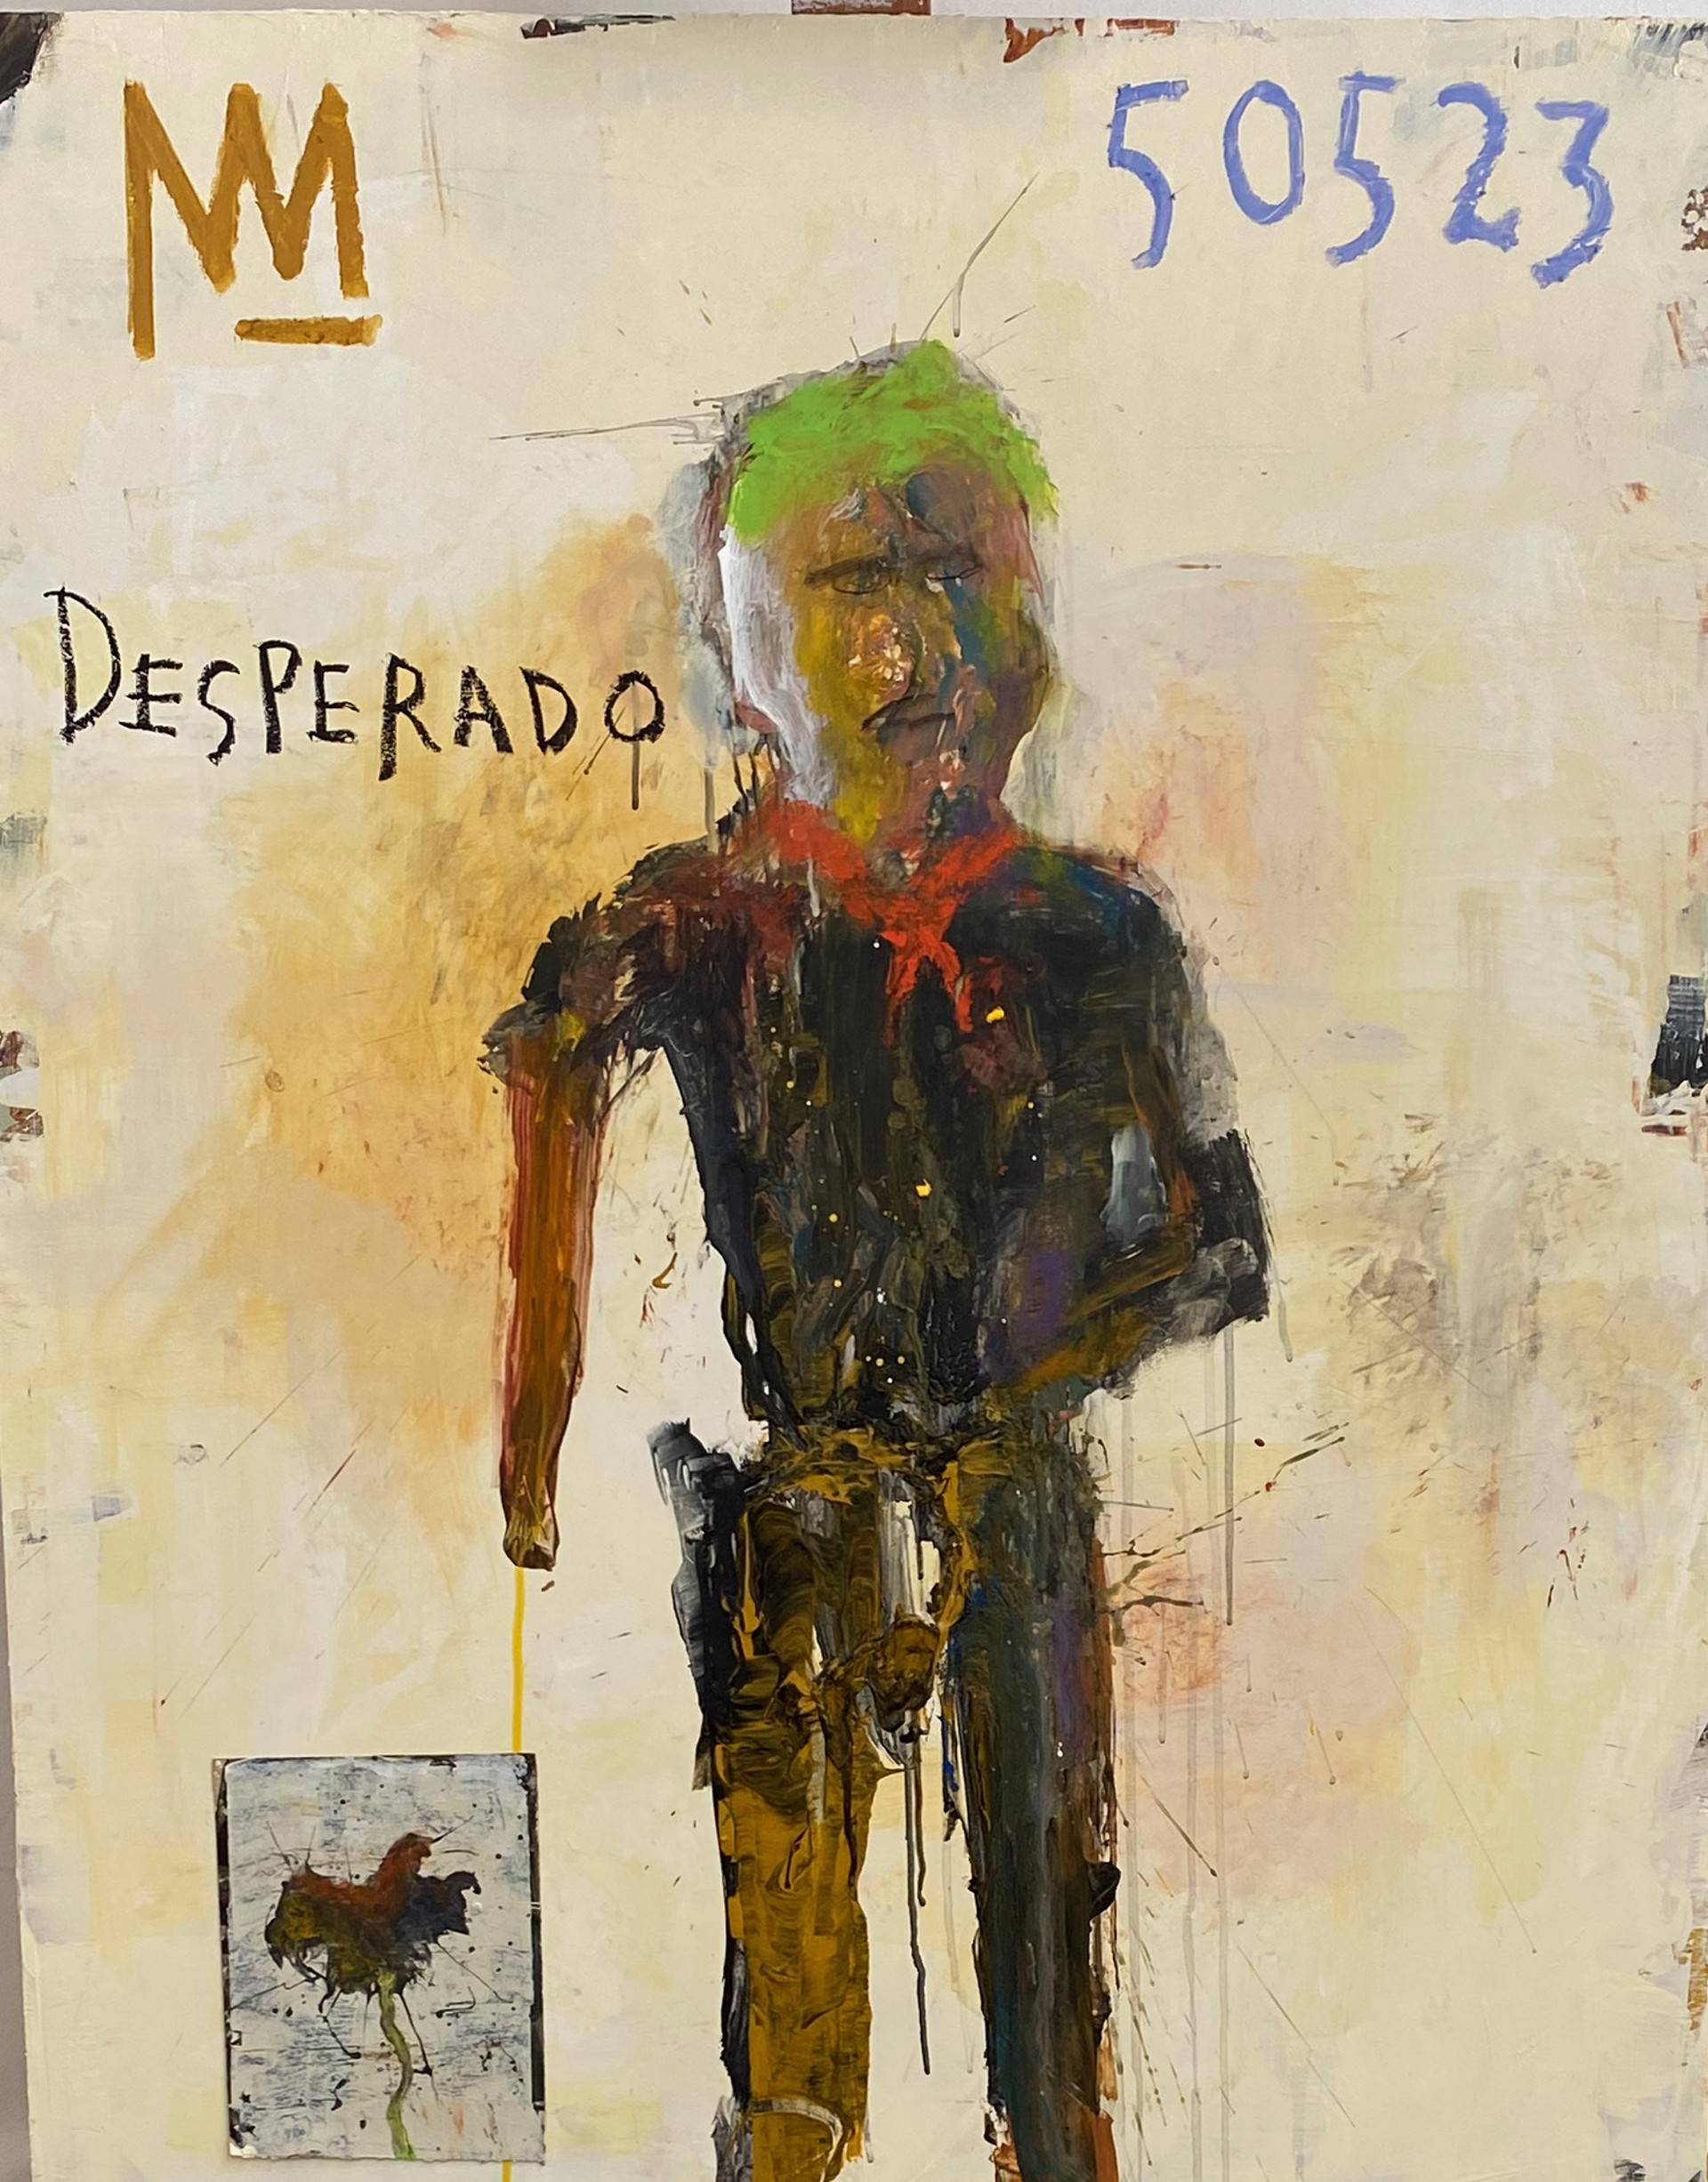 Desperado With Green Doorag by Michael Snodgrass